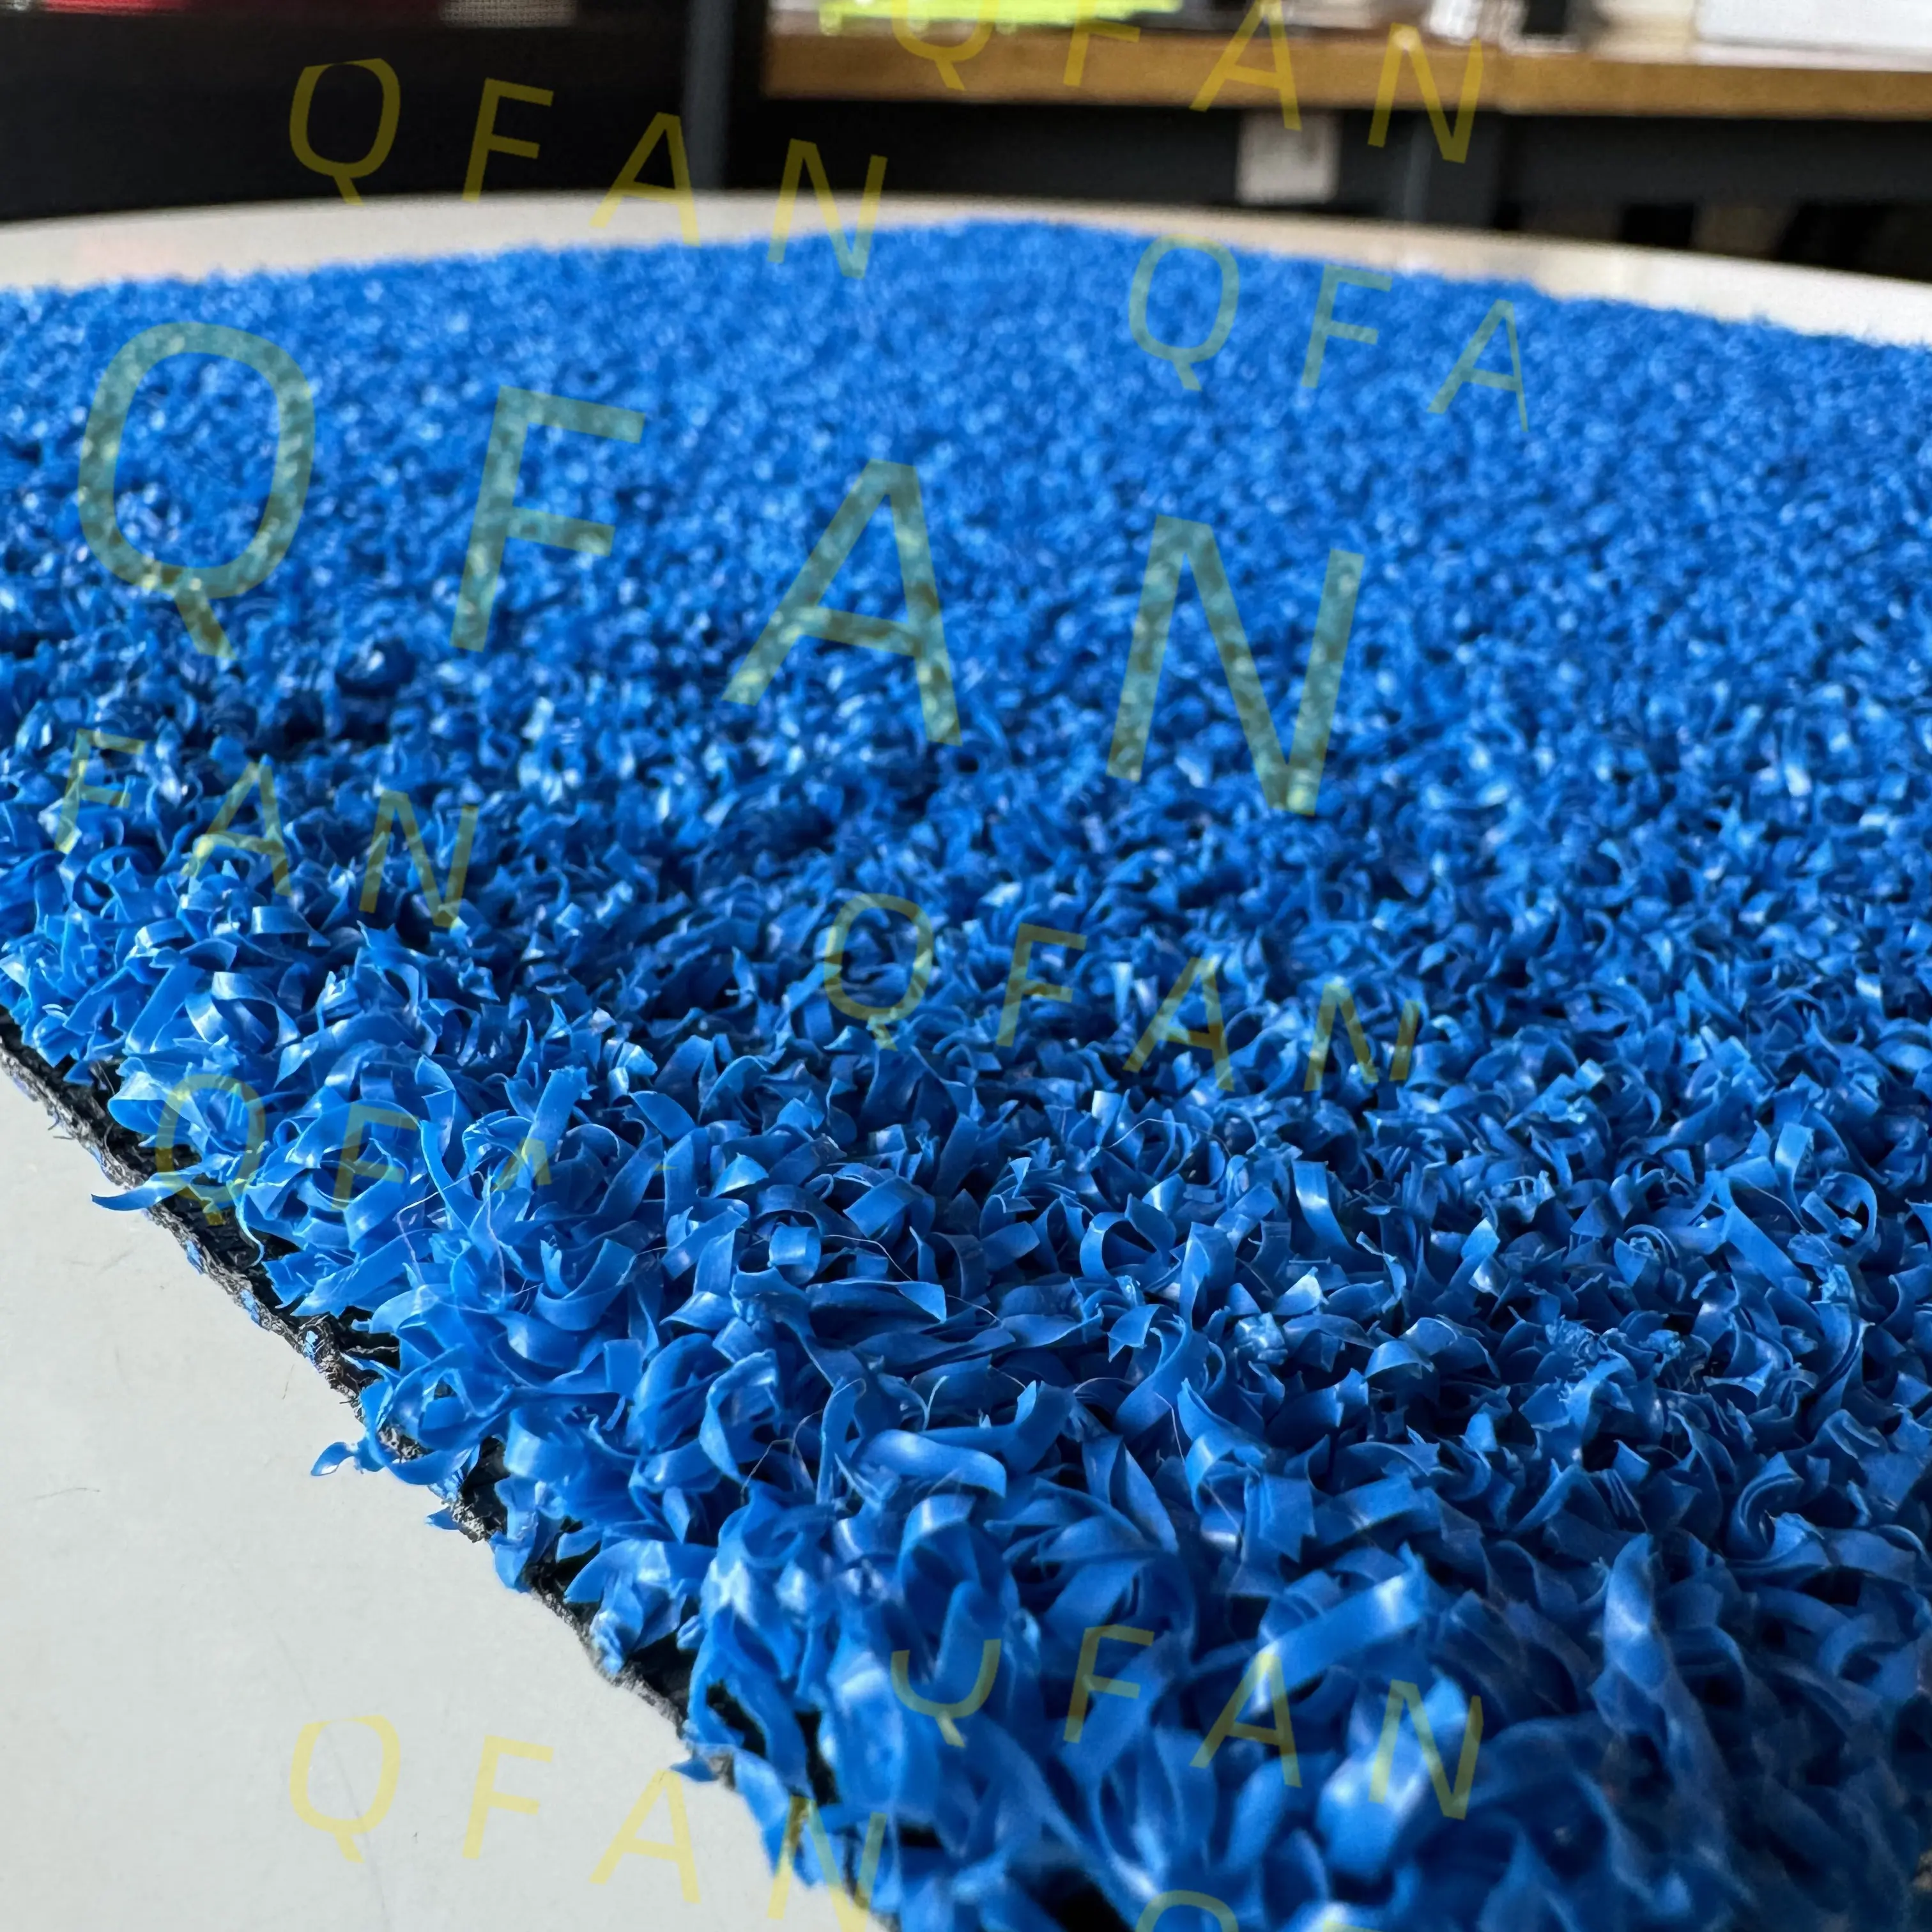 Grama artificial Qfan para exterior cor azul importada de Taiwan para quadra de tênis Padel